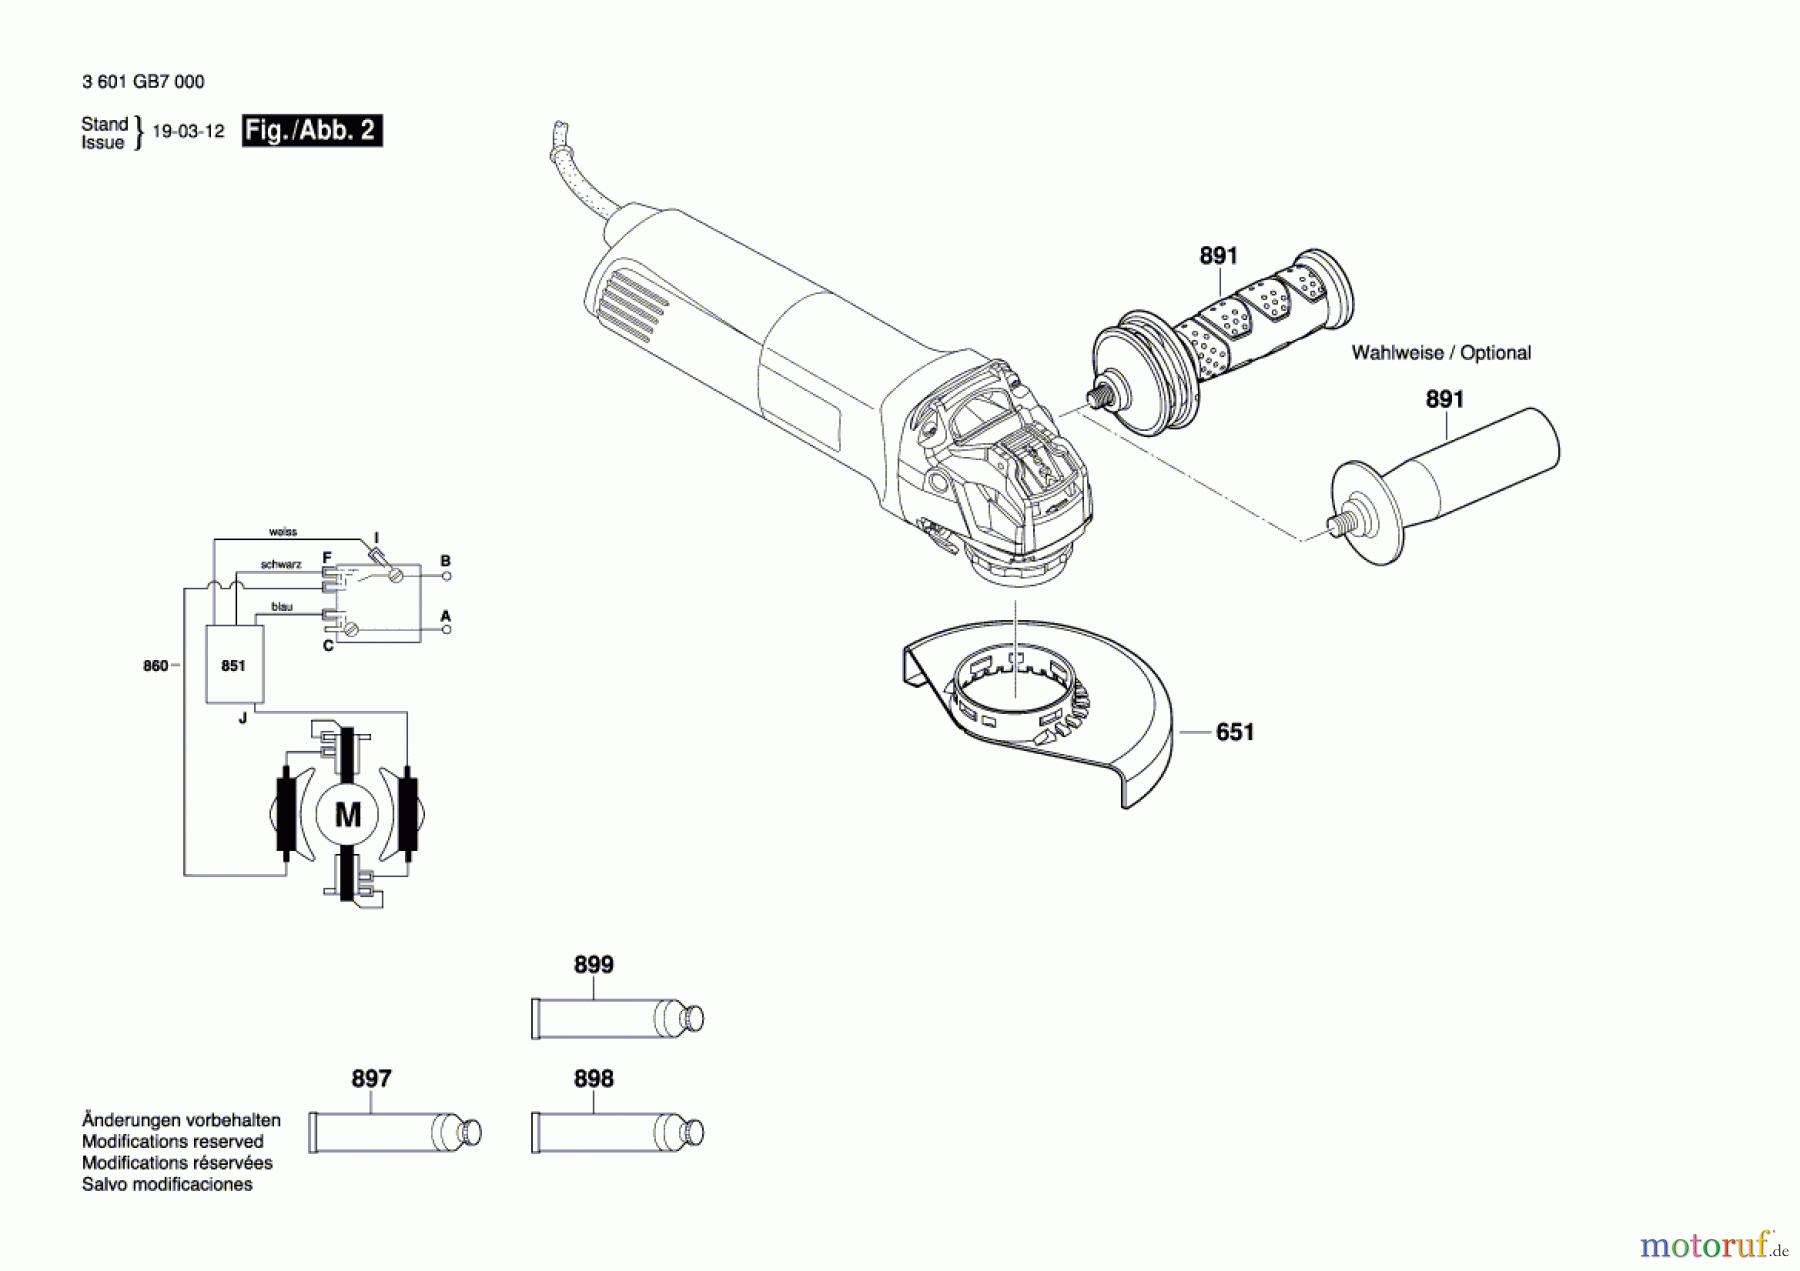  Bosch Werkzeug Winkelschleifer GWX 14-125 Seite 2